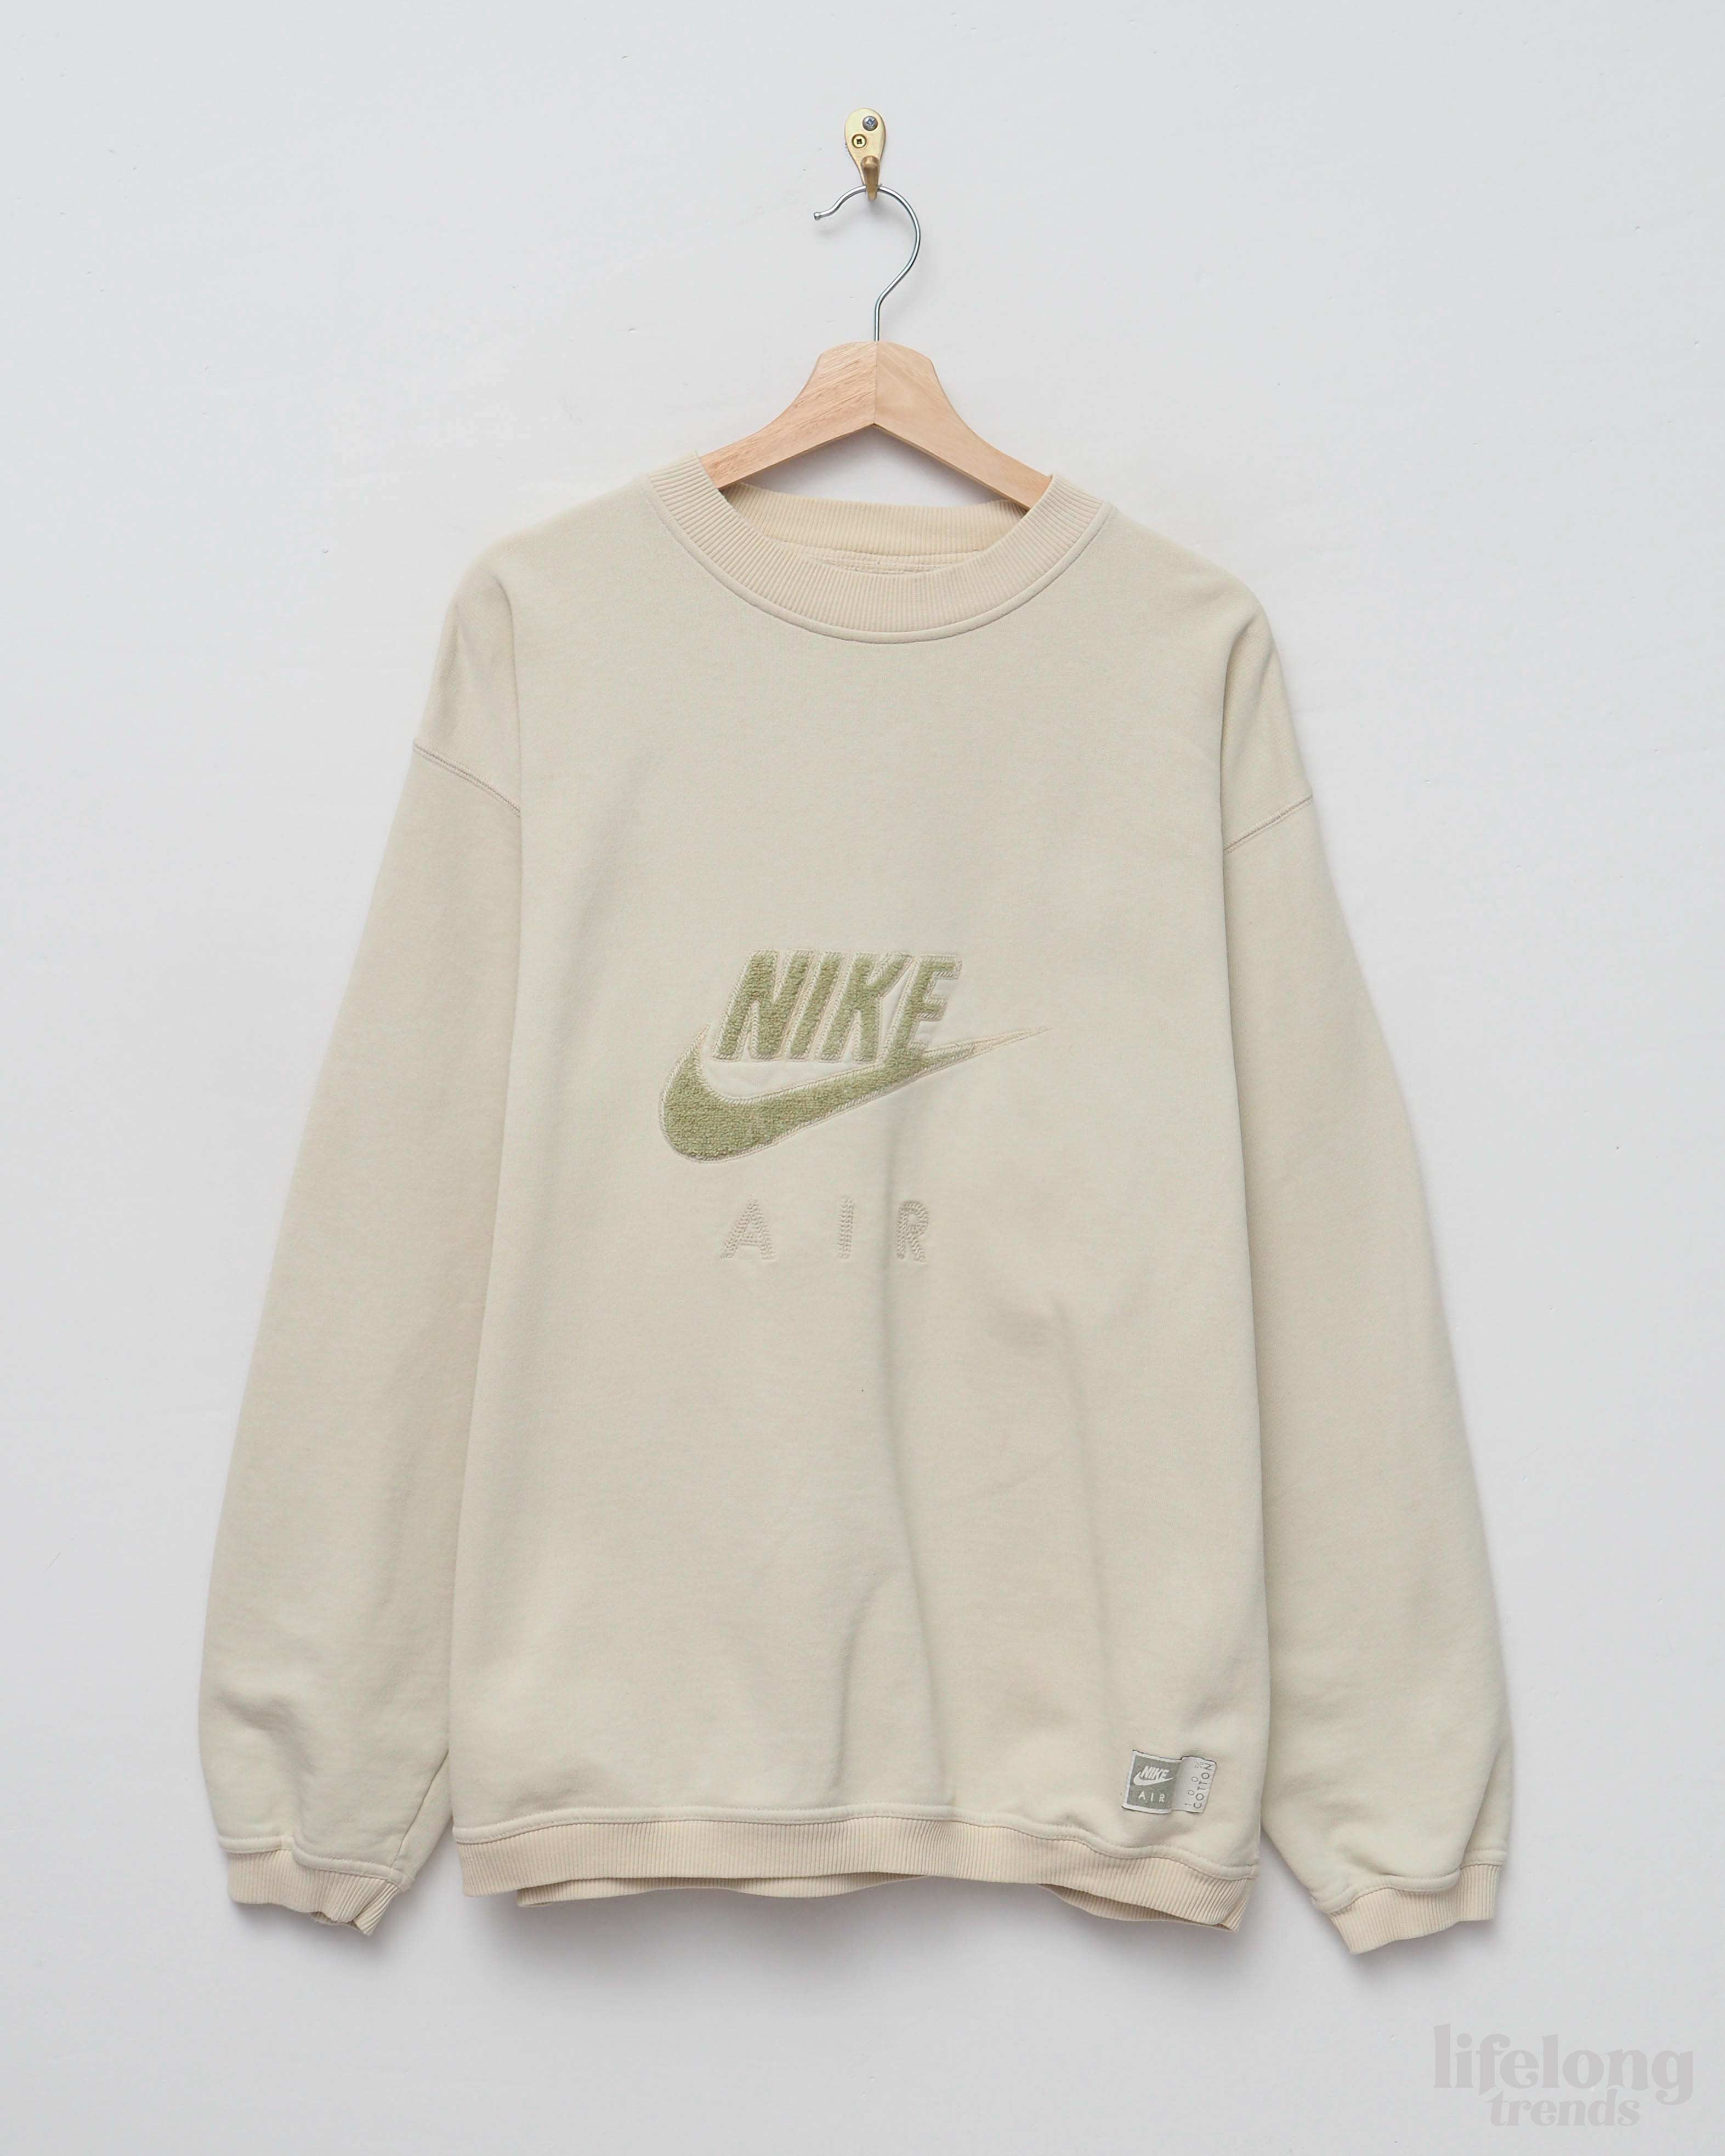 Vintage Nike sweatshirt – Trends